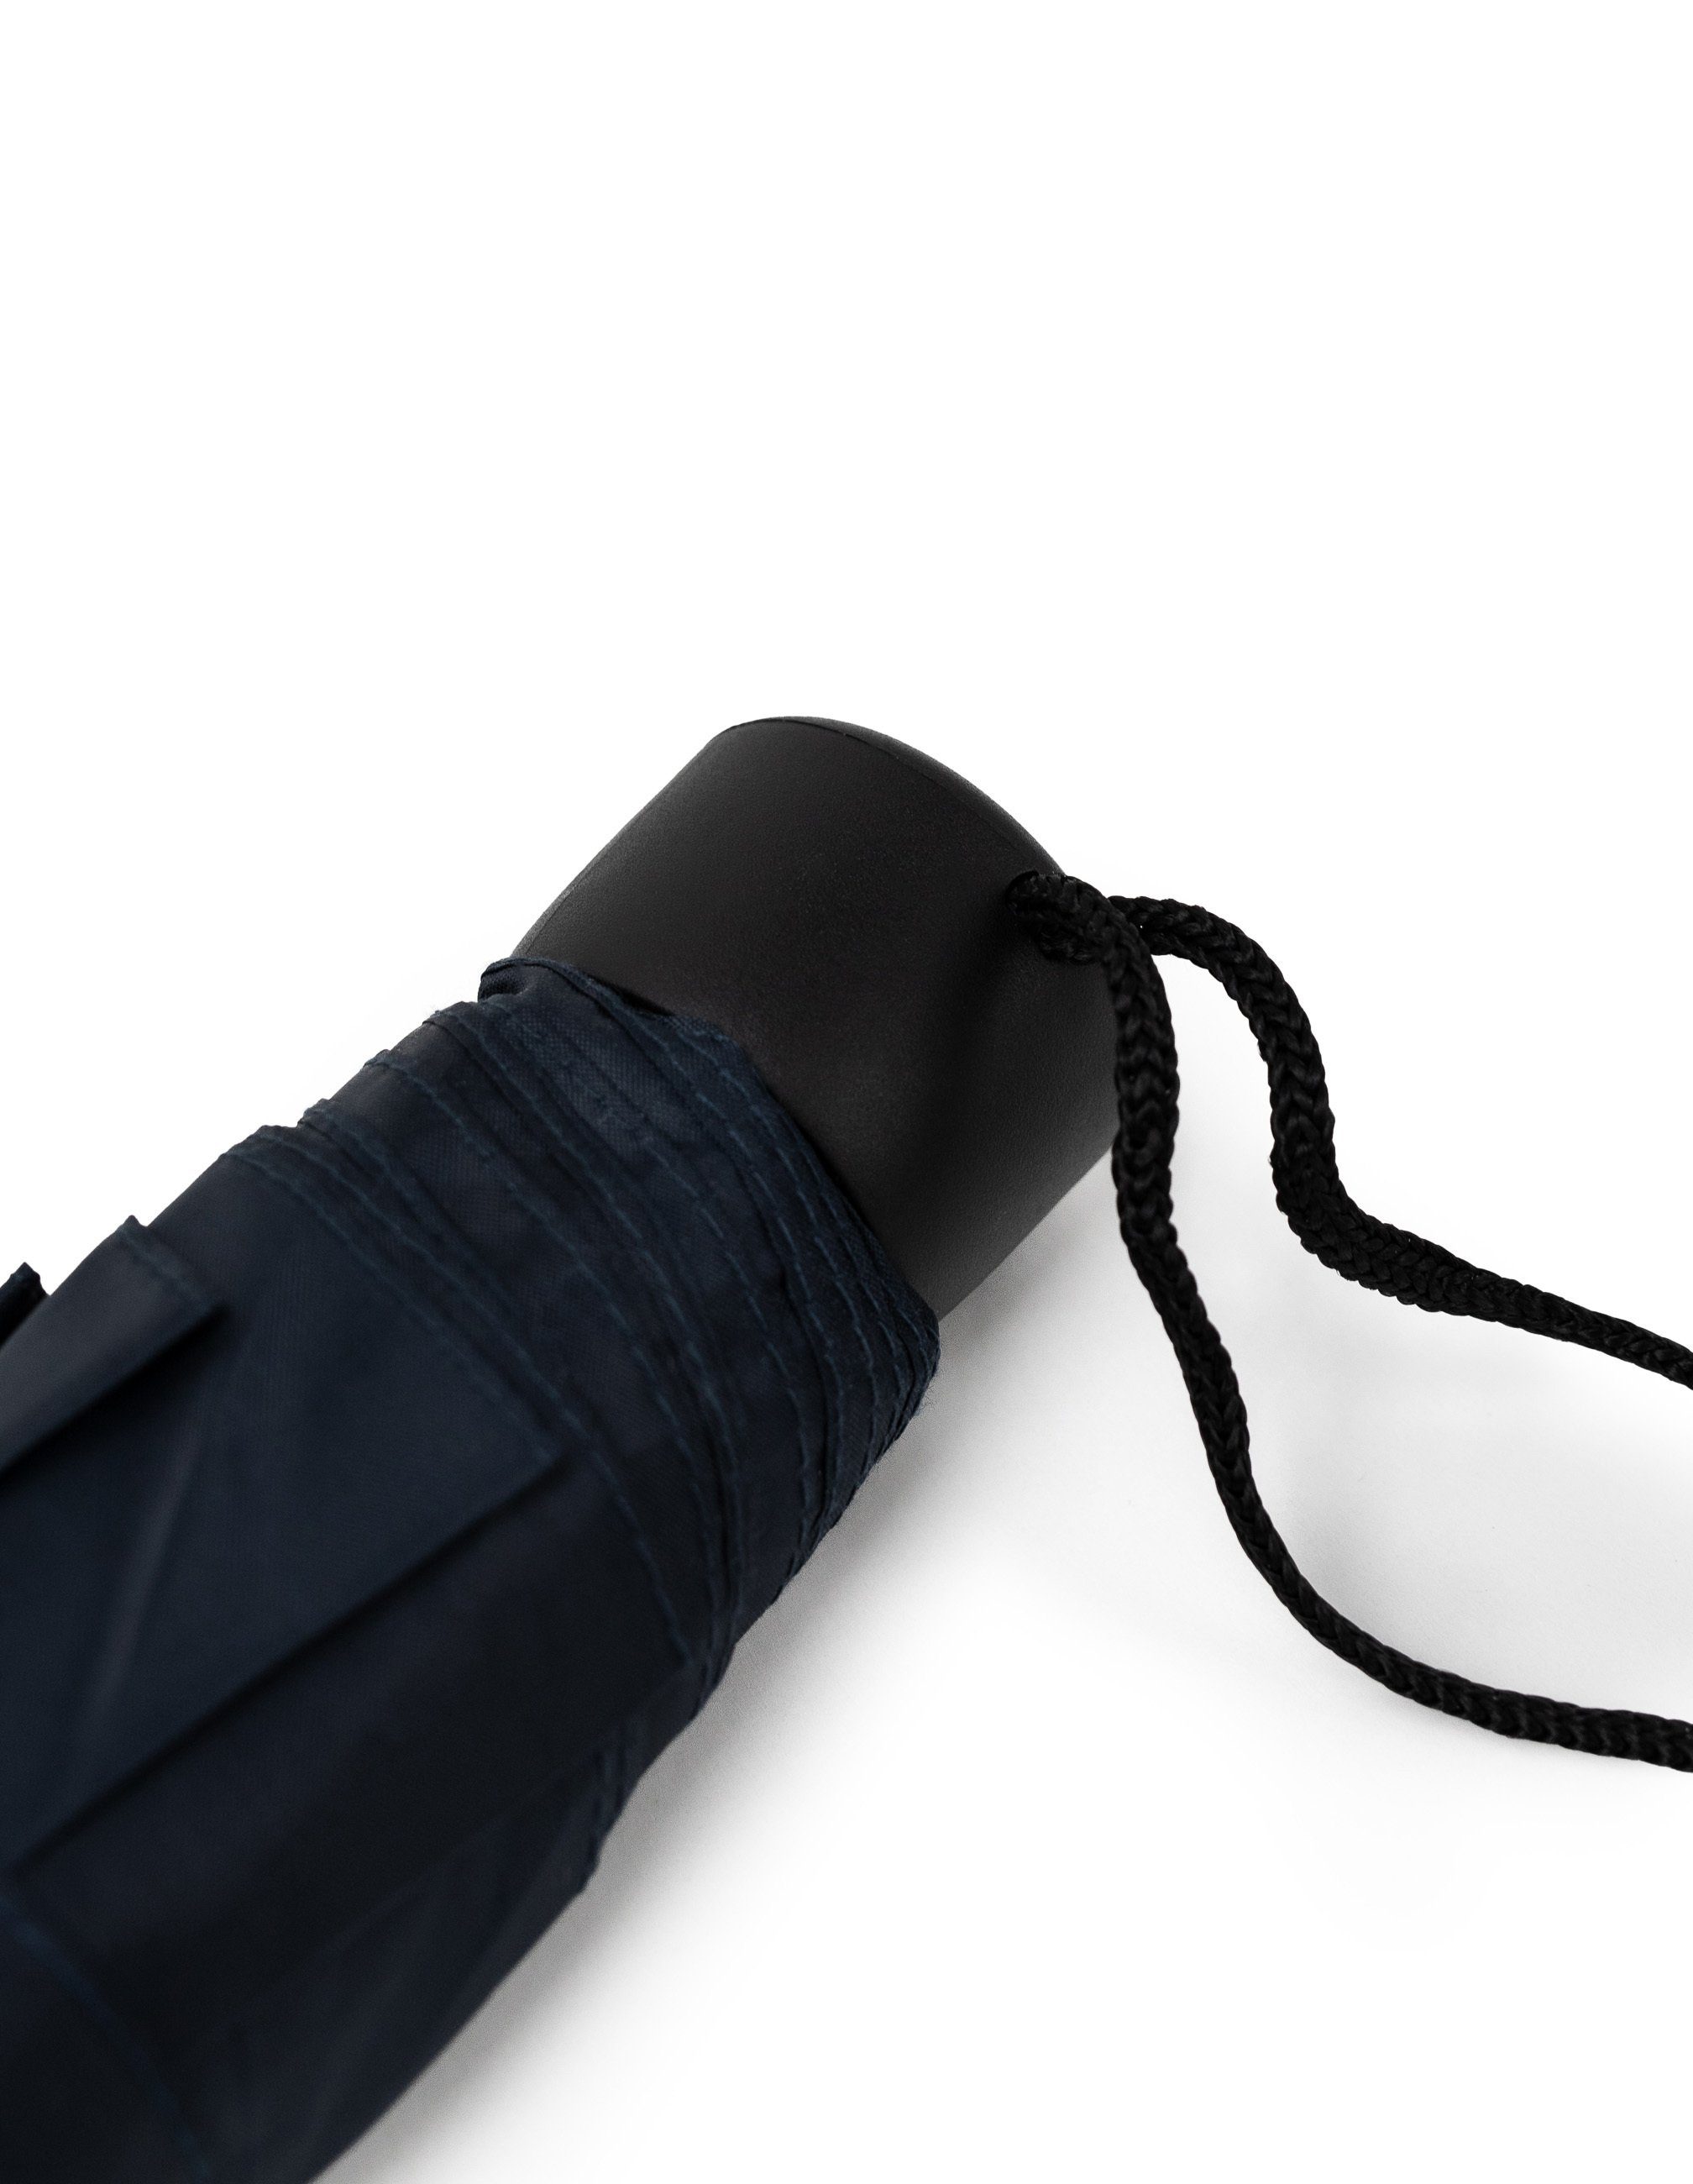 Hardware navy klein & Schietwetter Taschenregenschirm praktisch